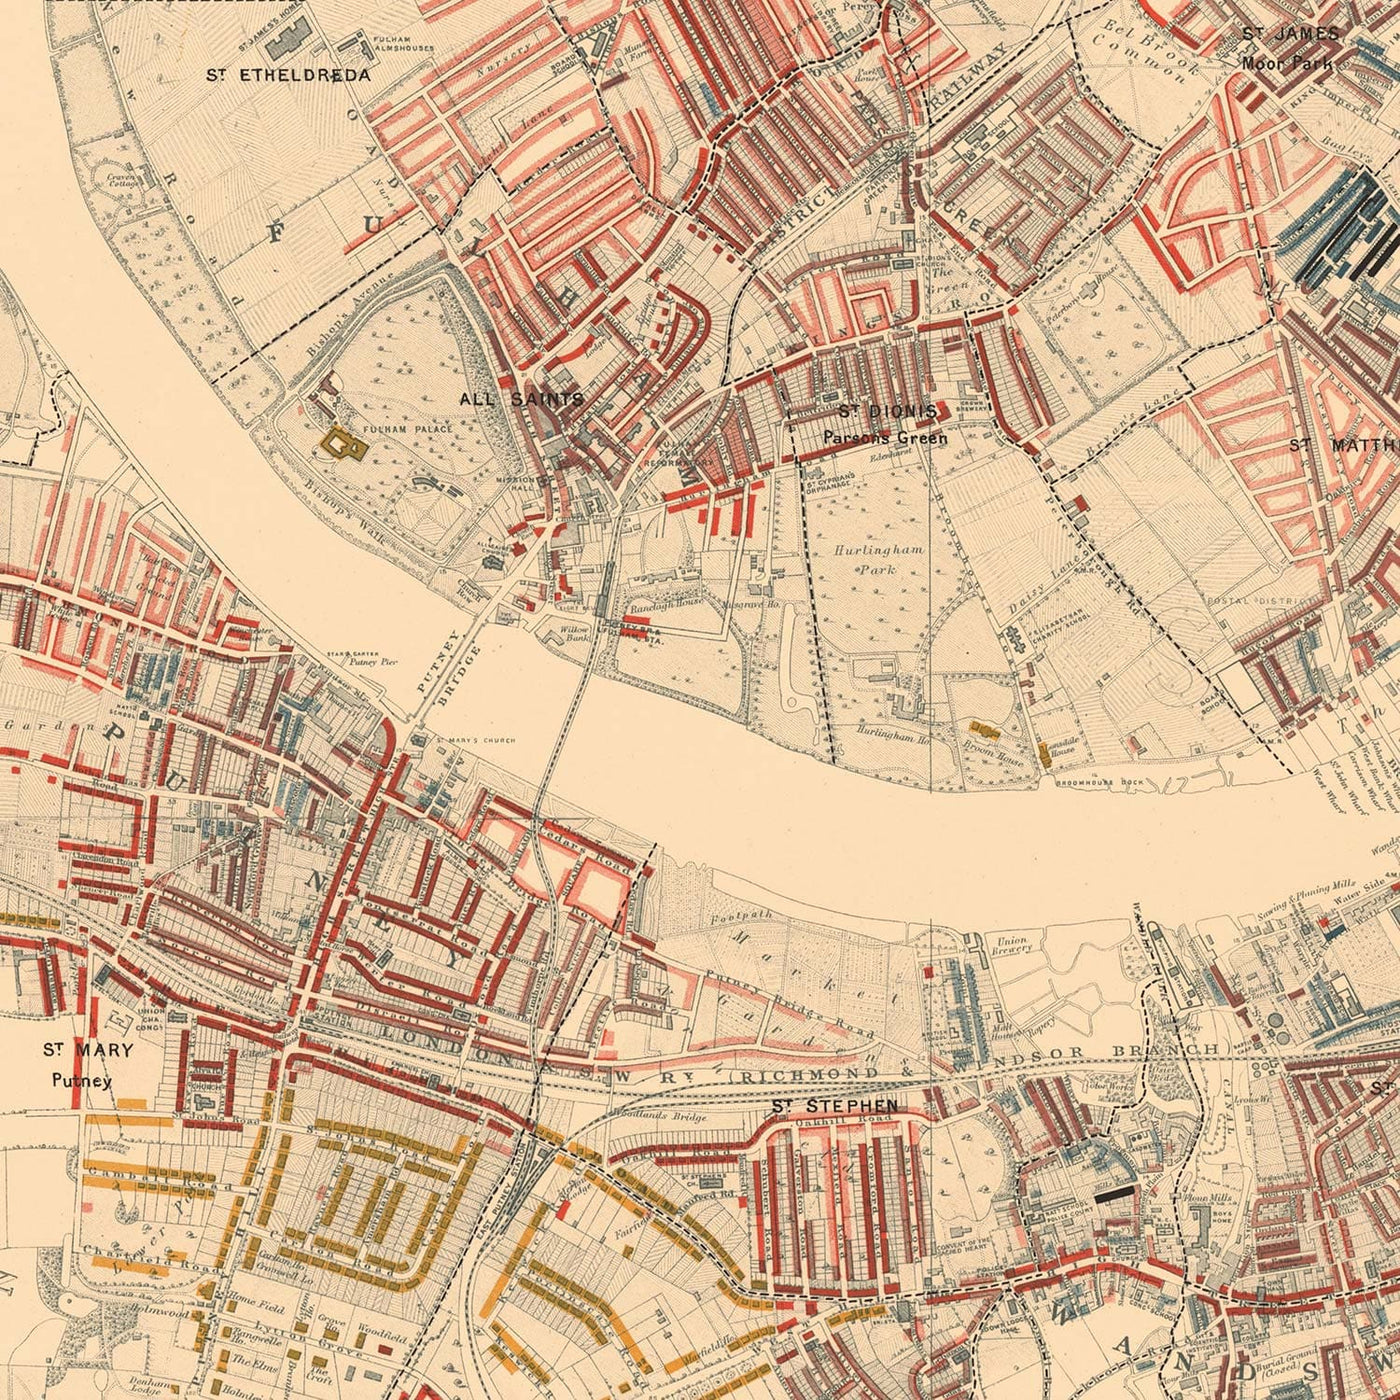 Mapa de la pobreza en Londres 1898-9, distrito suroeste, por Charles Booth - Battersea, Clapham, Putney, Wandsworth - SW6, SW15, SW18, SW10, SW11, SW8, SW4